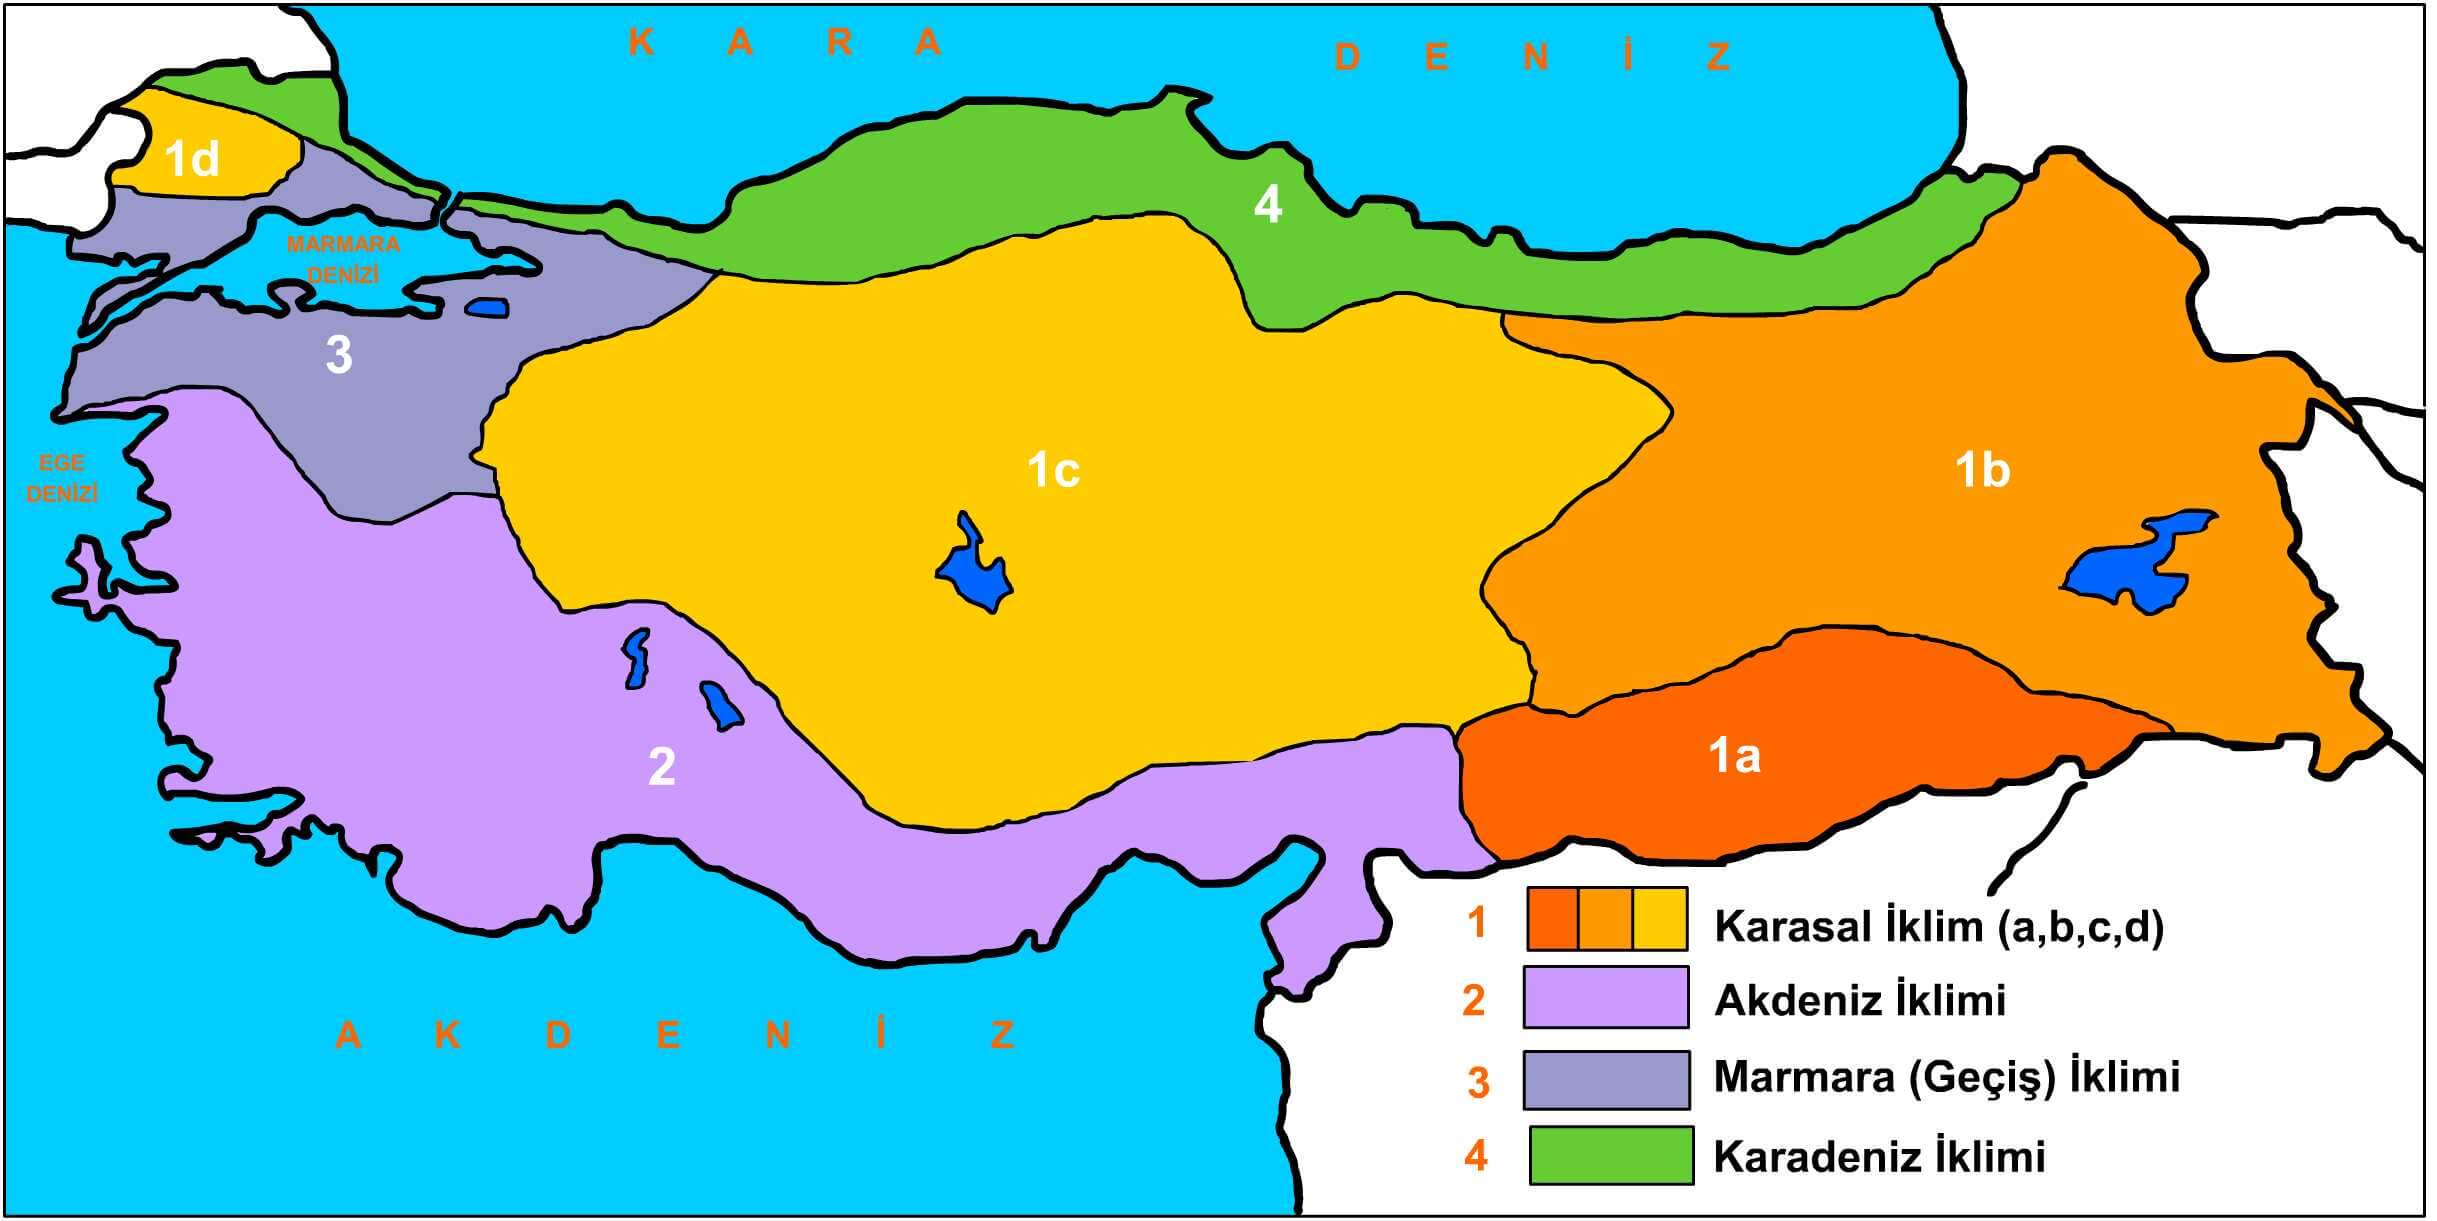 klima karte von turkei